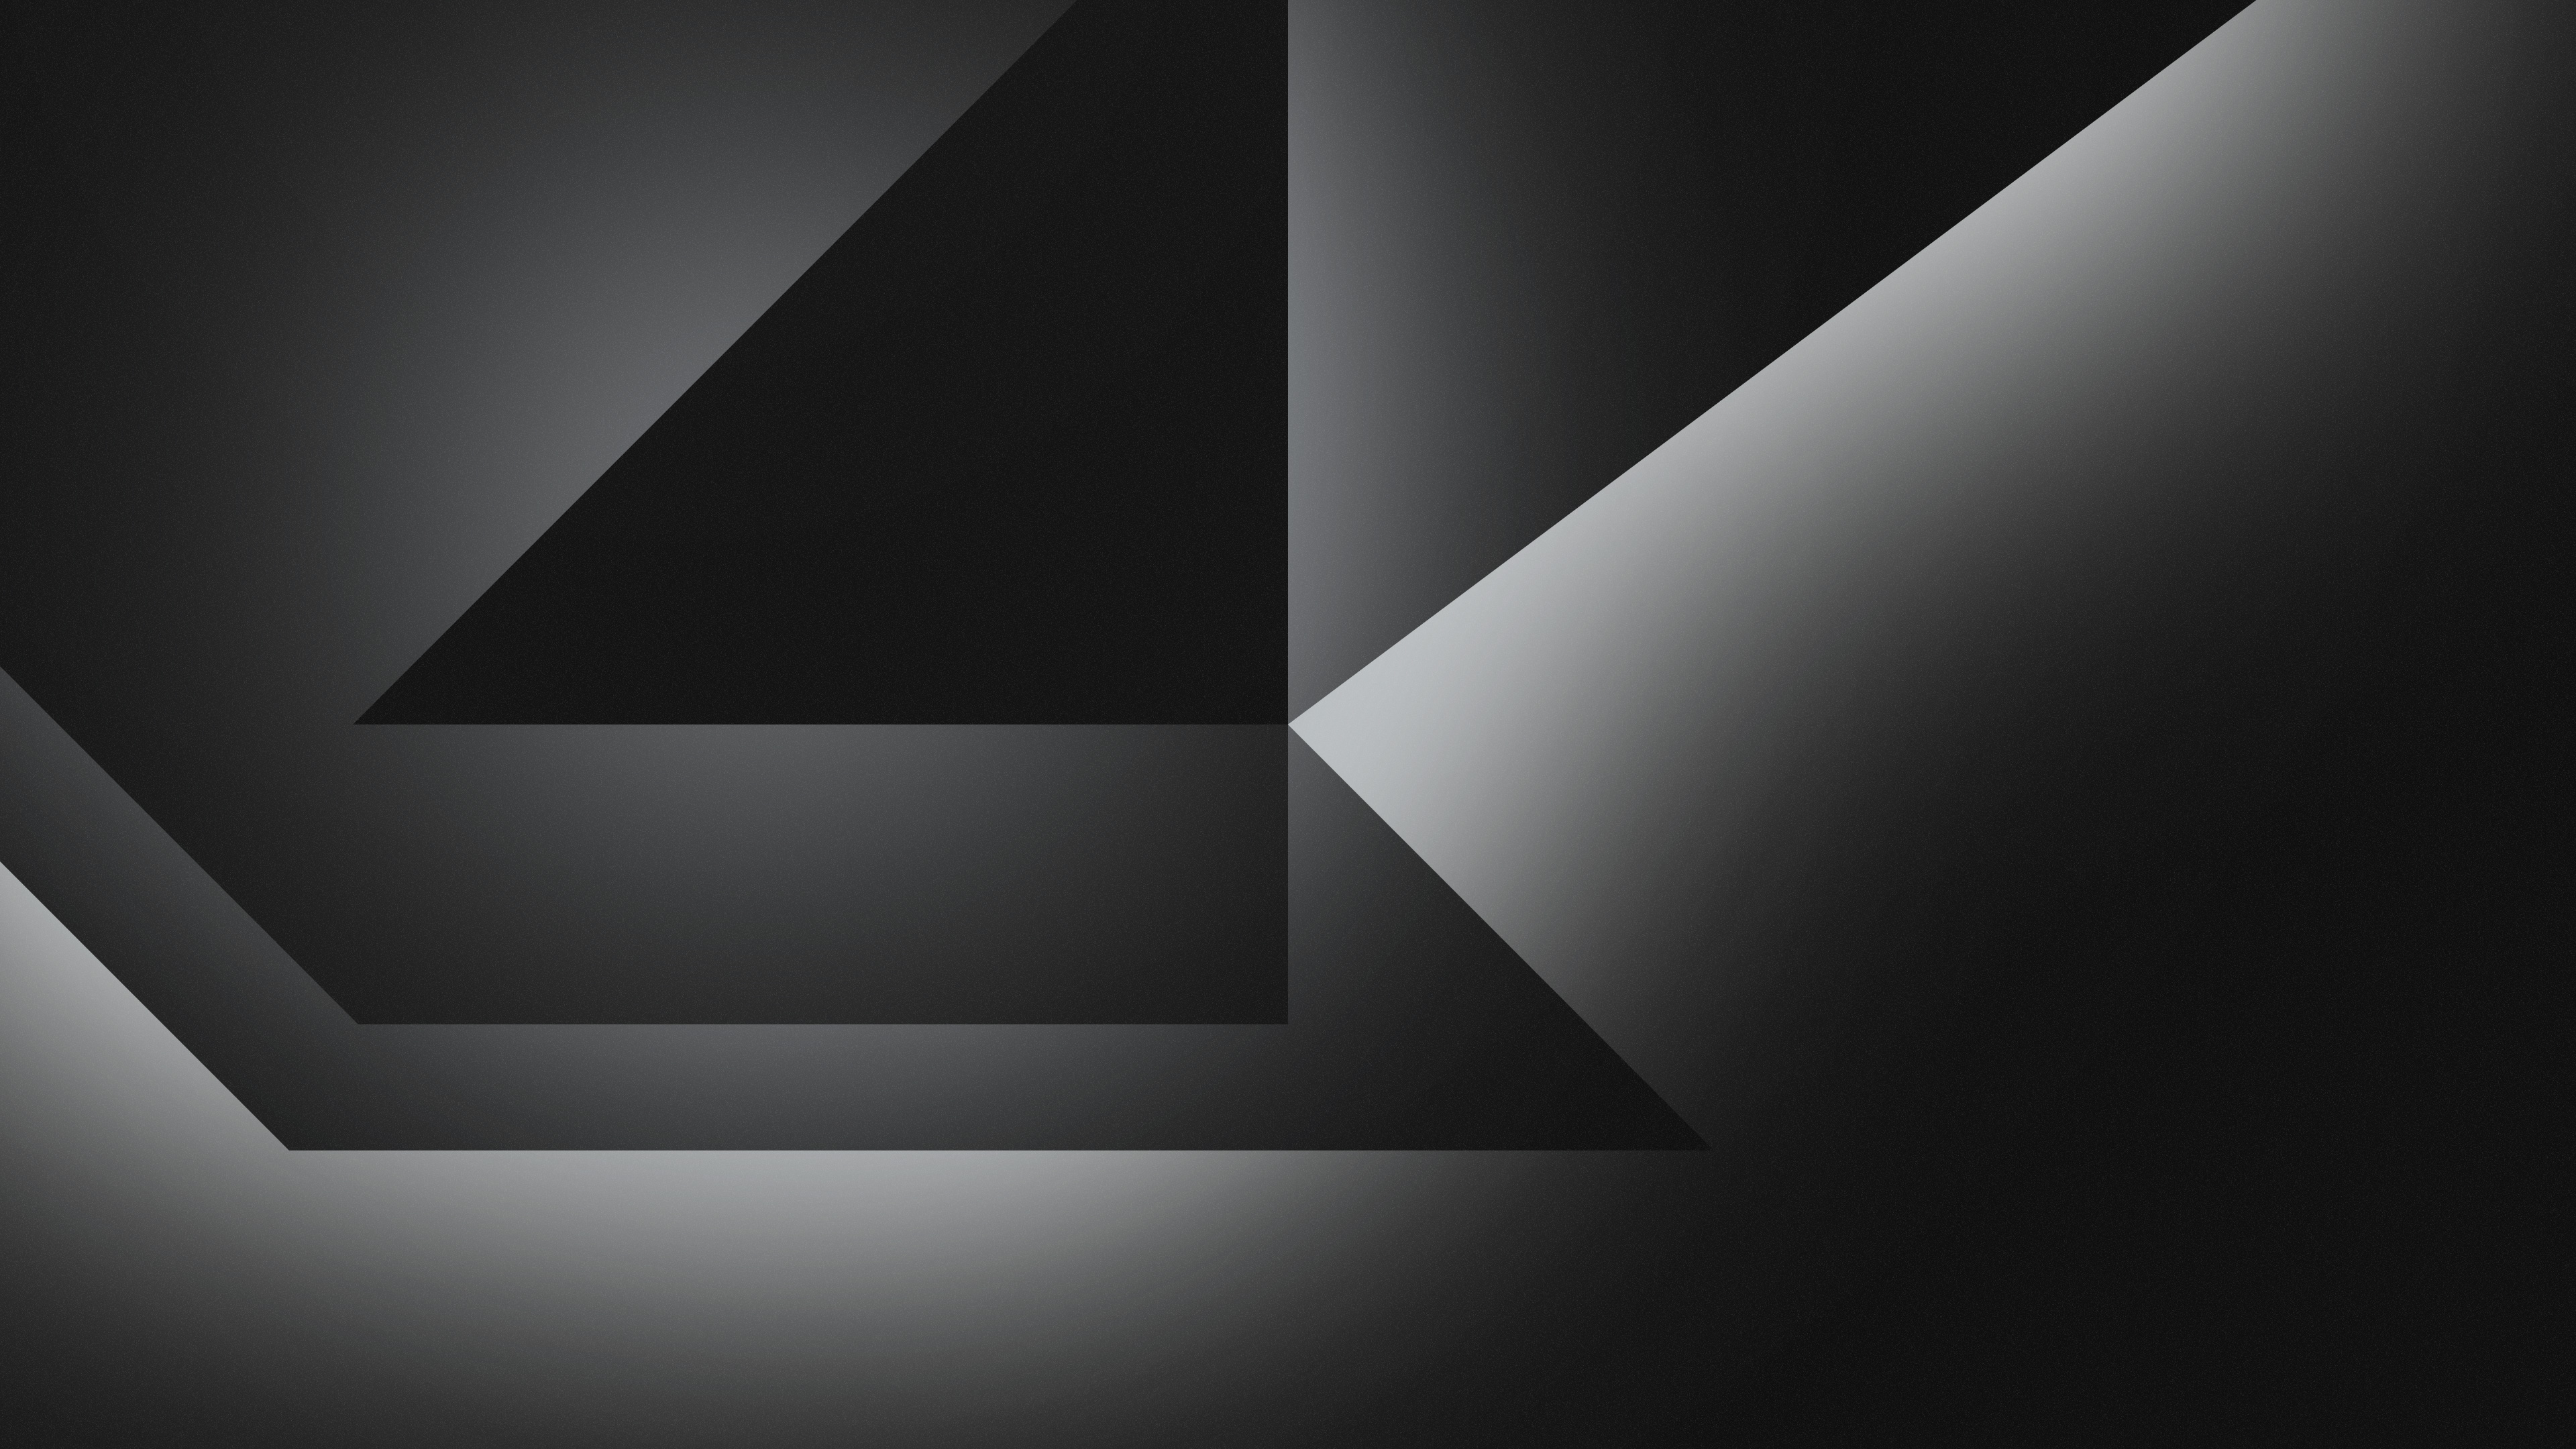 Dark Grey Abstract Shapes 4k Wallpaper,HD Abstract Wallpapers,4k Wallpapers,Images,Backgrounds